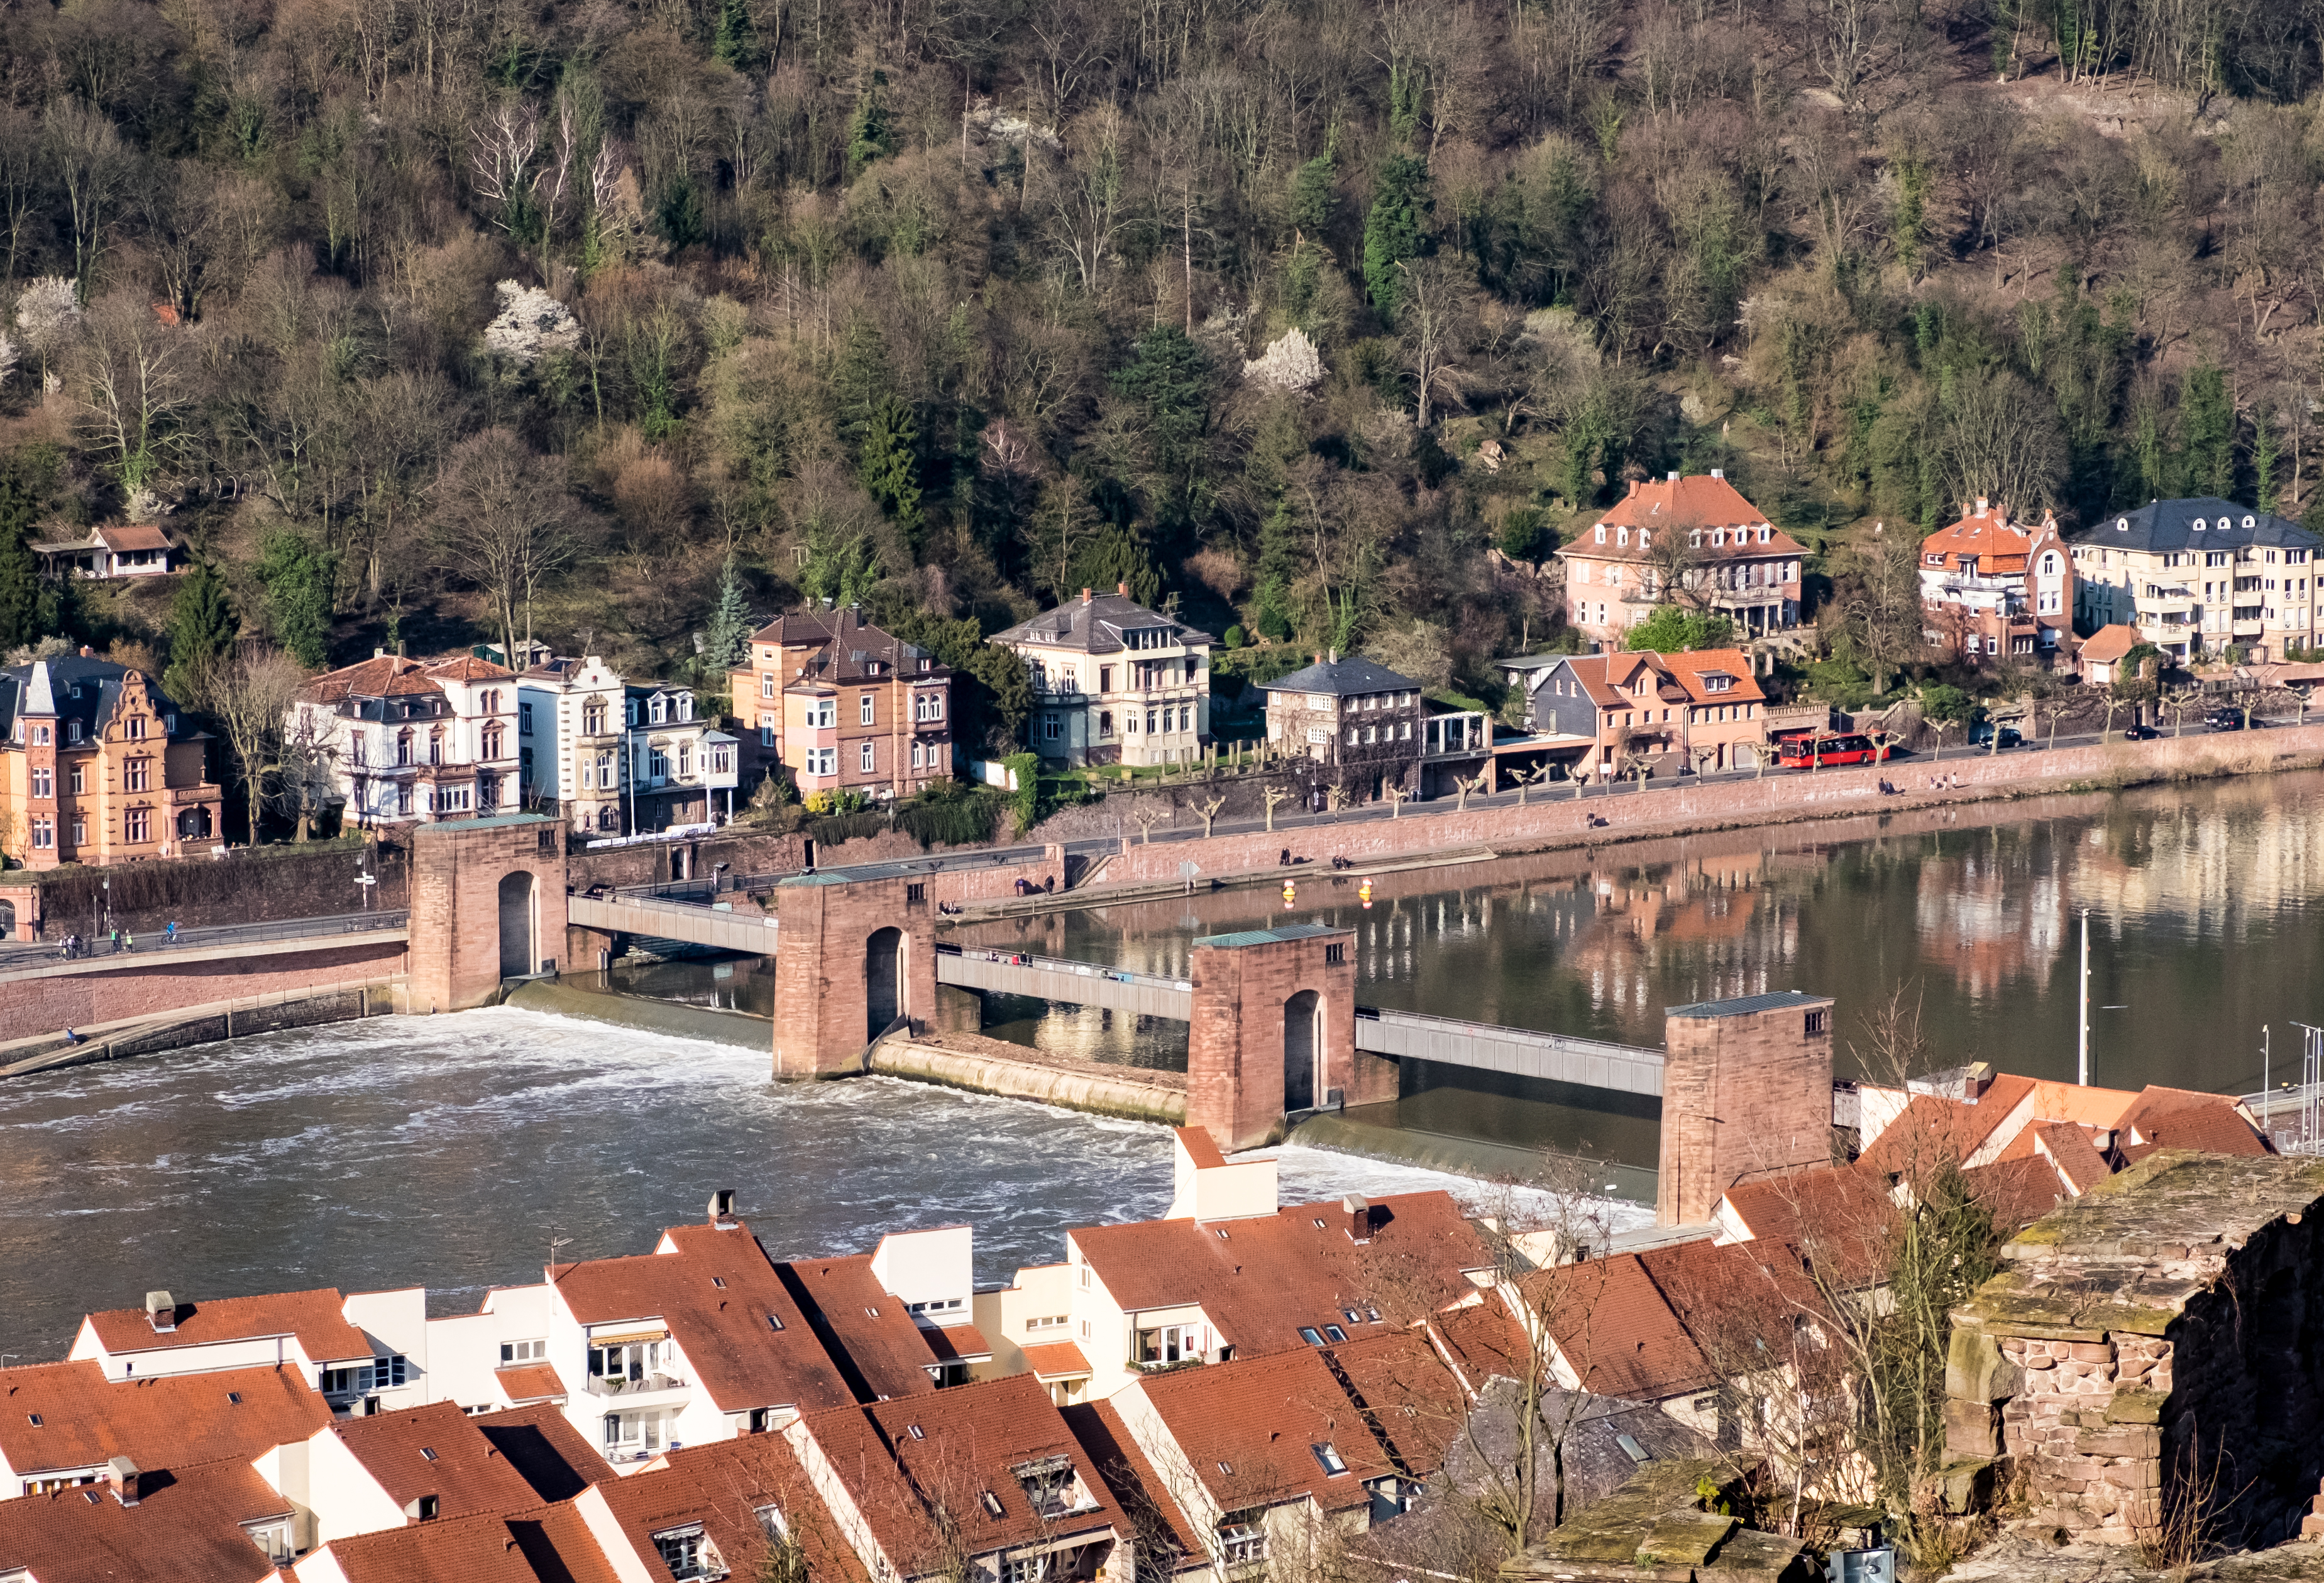 Brothel in Heidelberg